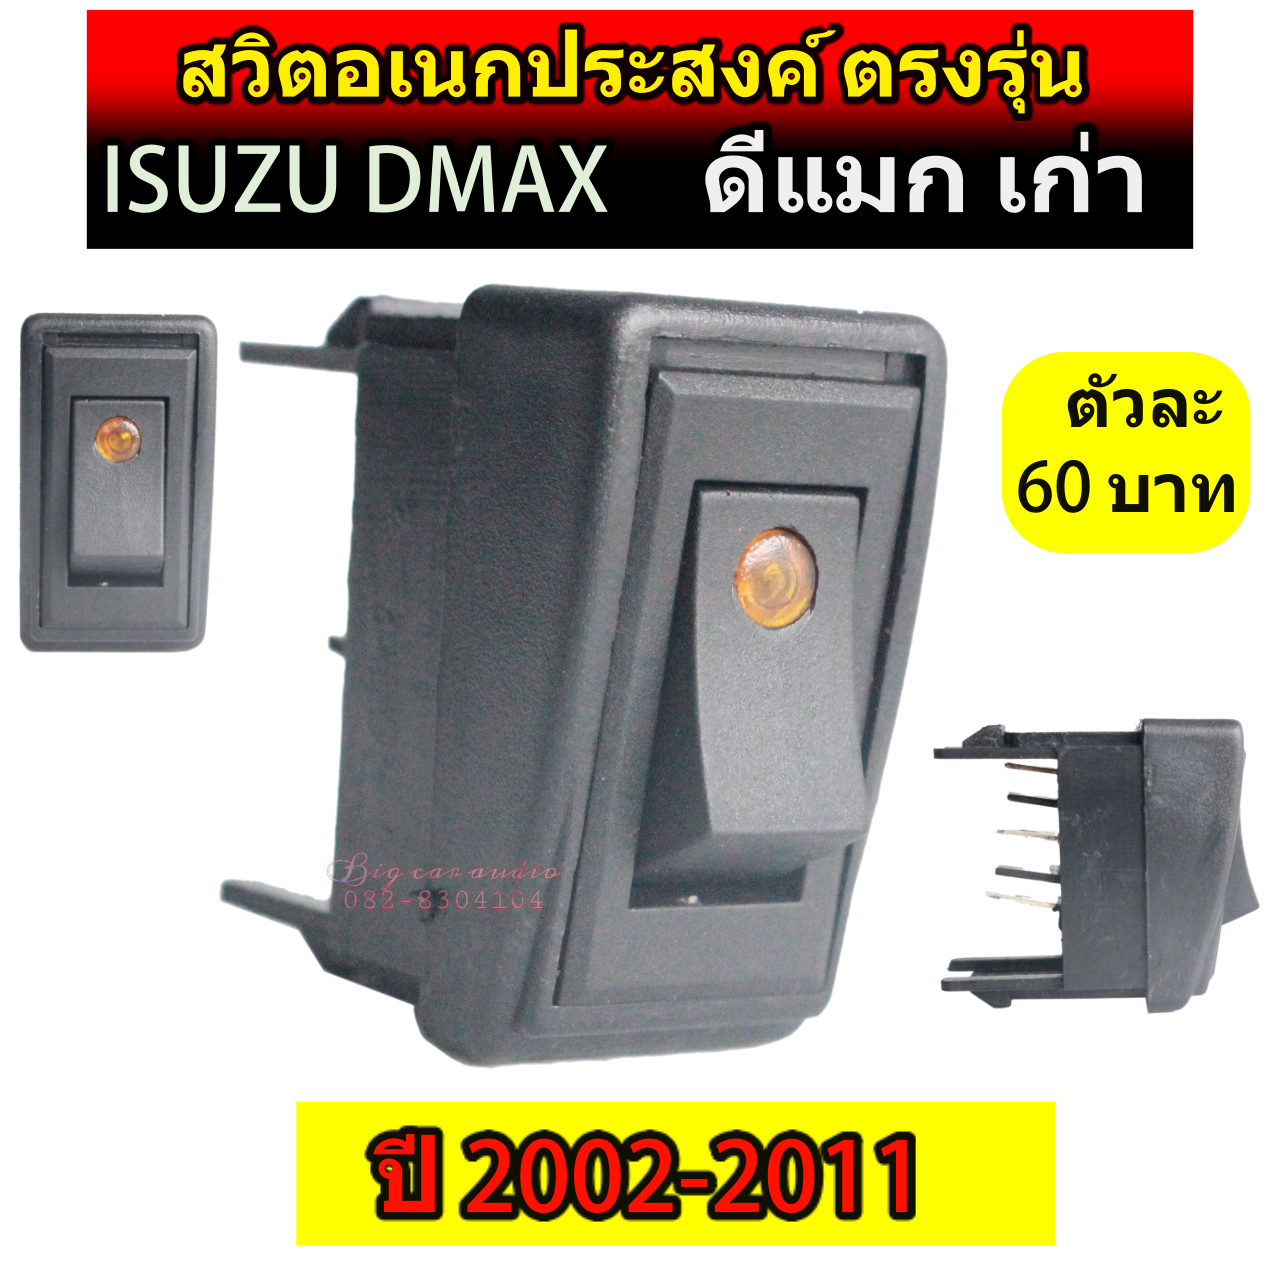 สวิตซ์ เอนกประสงค์ 12V ตรงรุ่น ISUZU DMAX (ดีแมกเก่า) 2002-2011 ขายเป็นตัว ตัวละ 60บาท Switch สวิทซ์ สวิตตรงรุ่นดีแม็กเก่า สวิตดีแมกเก่า